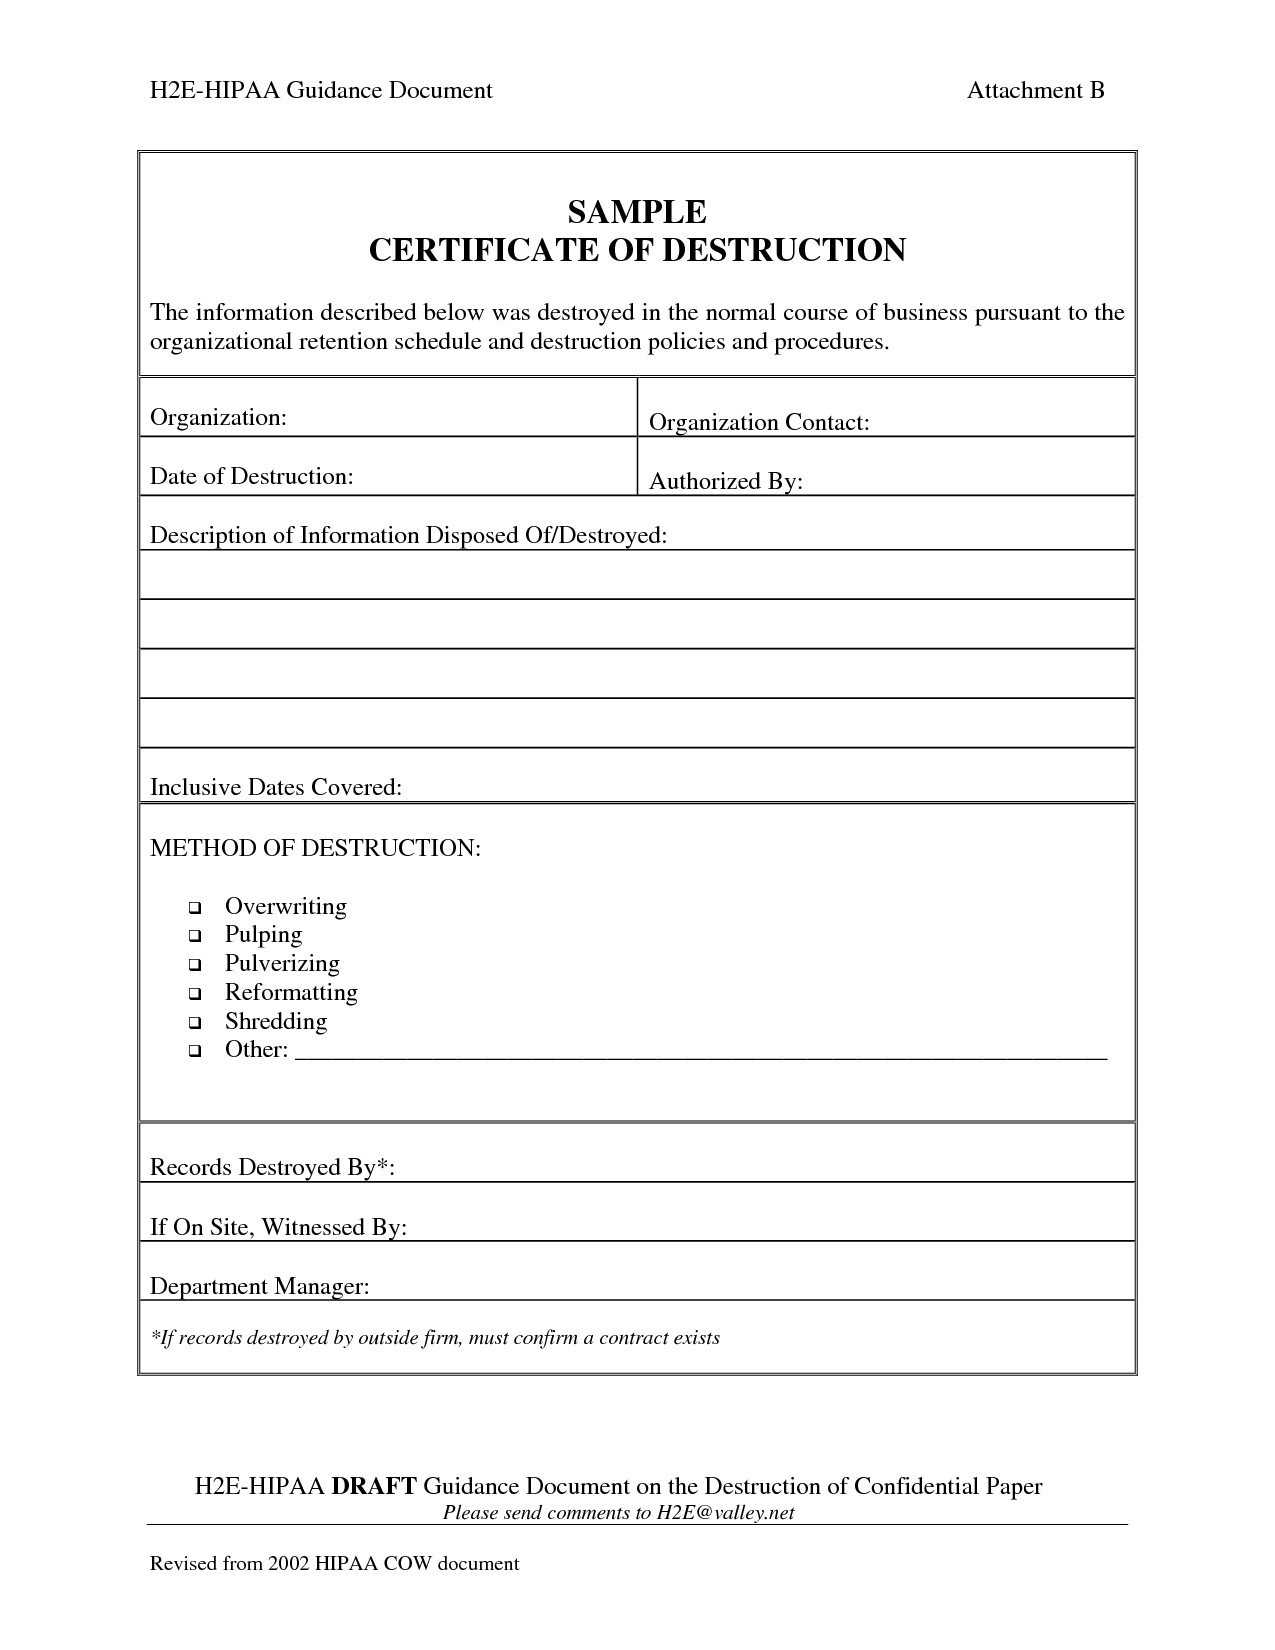 009 Certificate Of Destruction Template Exceptional Ideas In Certificate Of Disposal Template